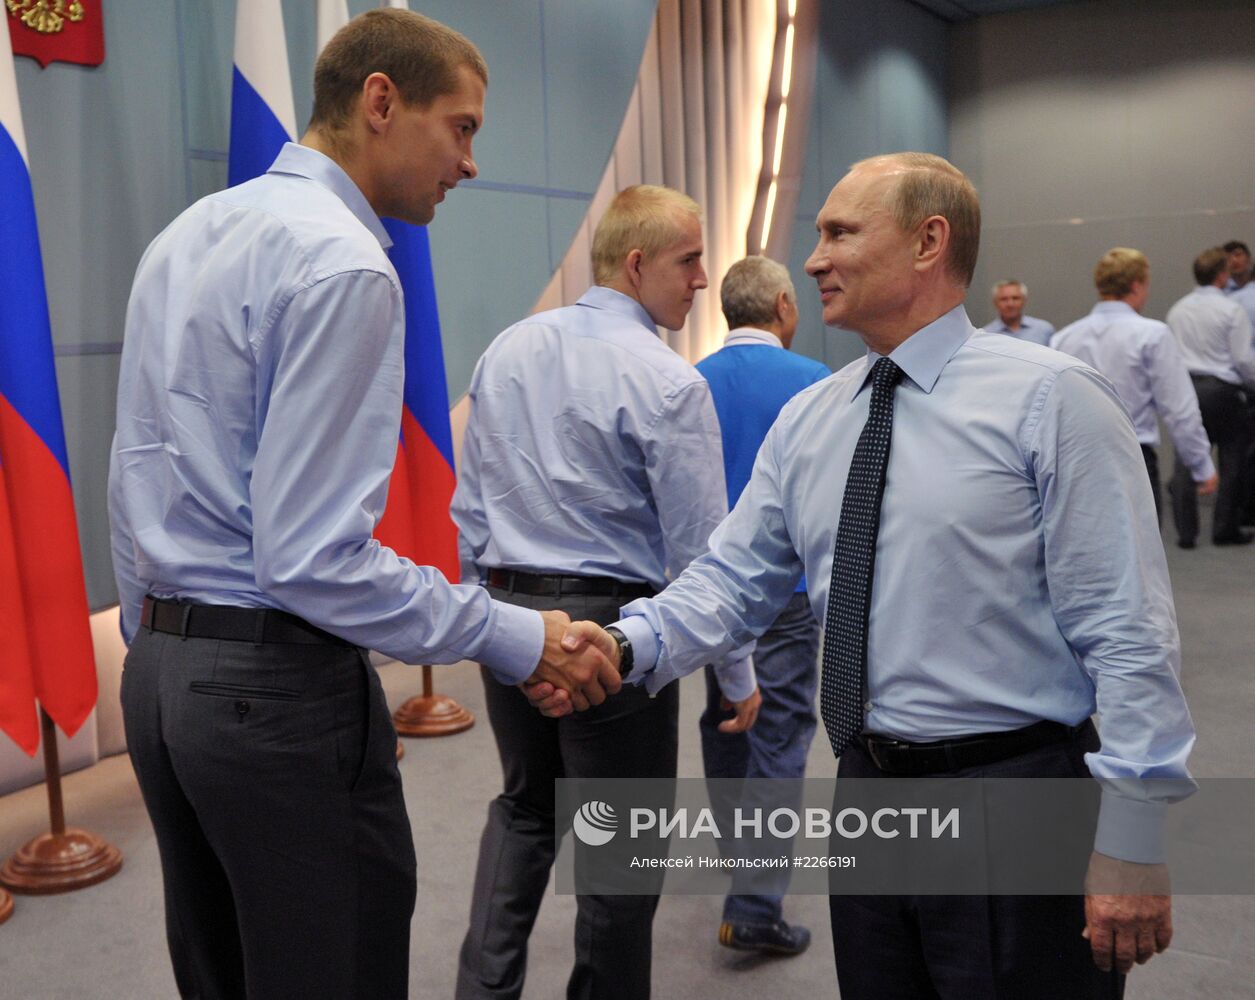 В.Путин встретился с членами хоккейного клуба "Динамо"